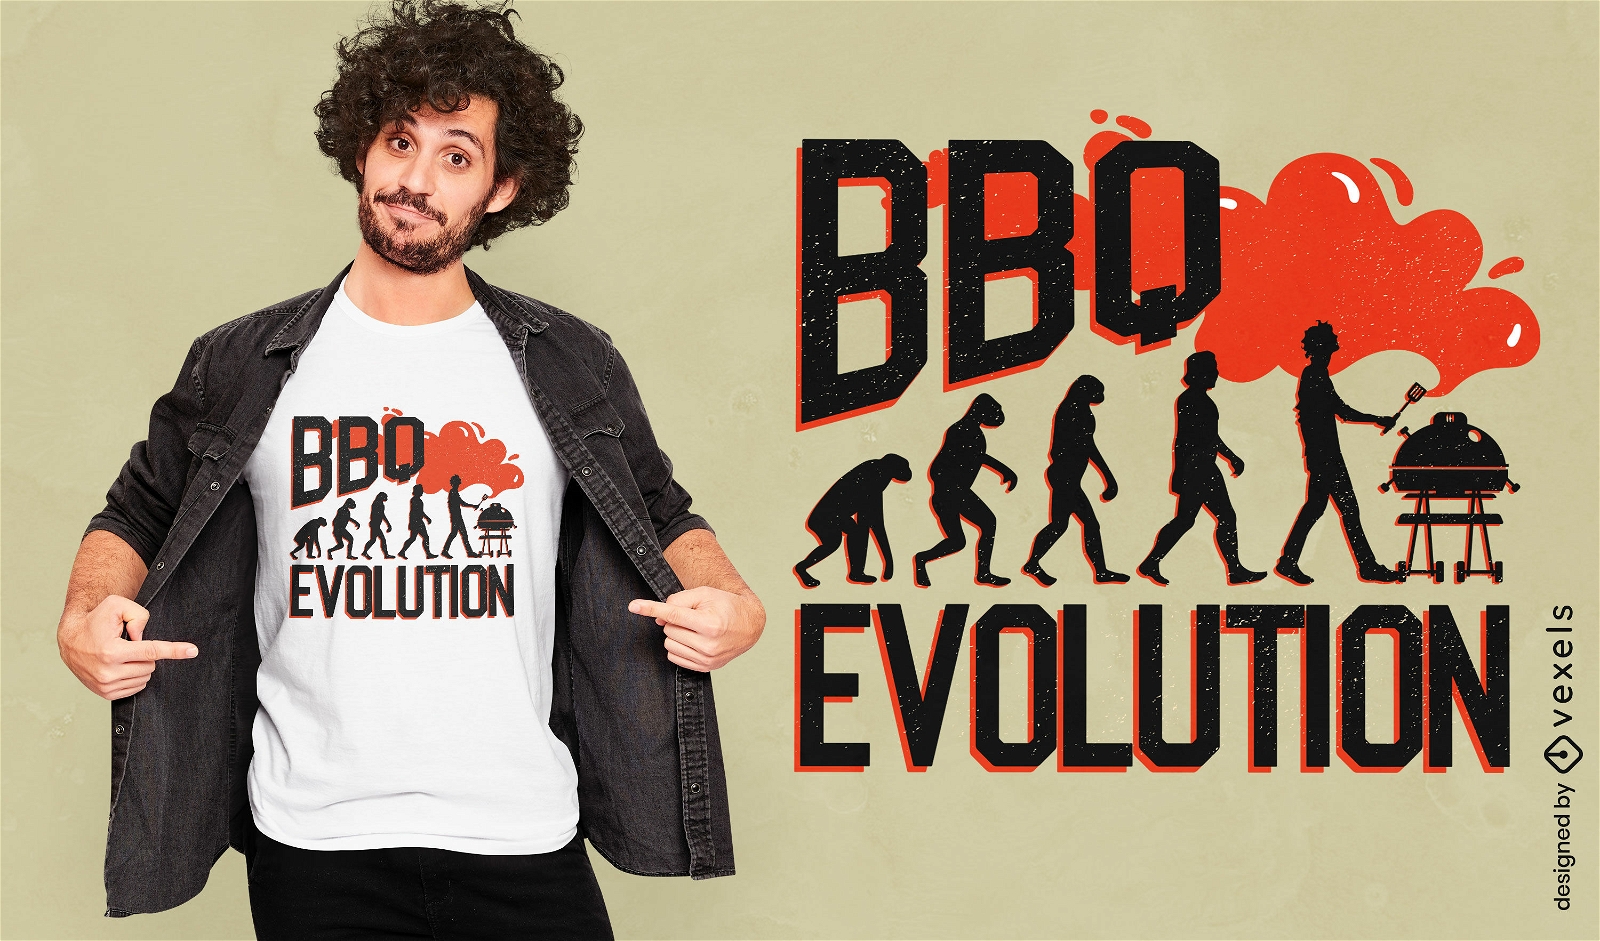 Dise?o de camiseta de evoluci?n de barbacoa.